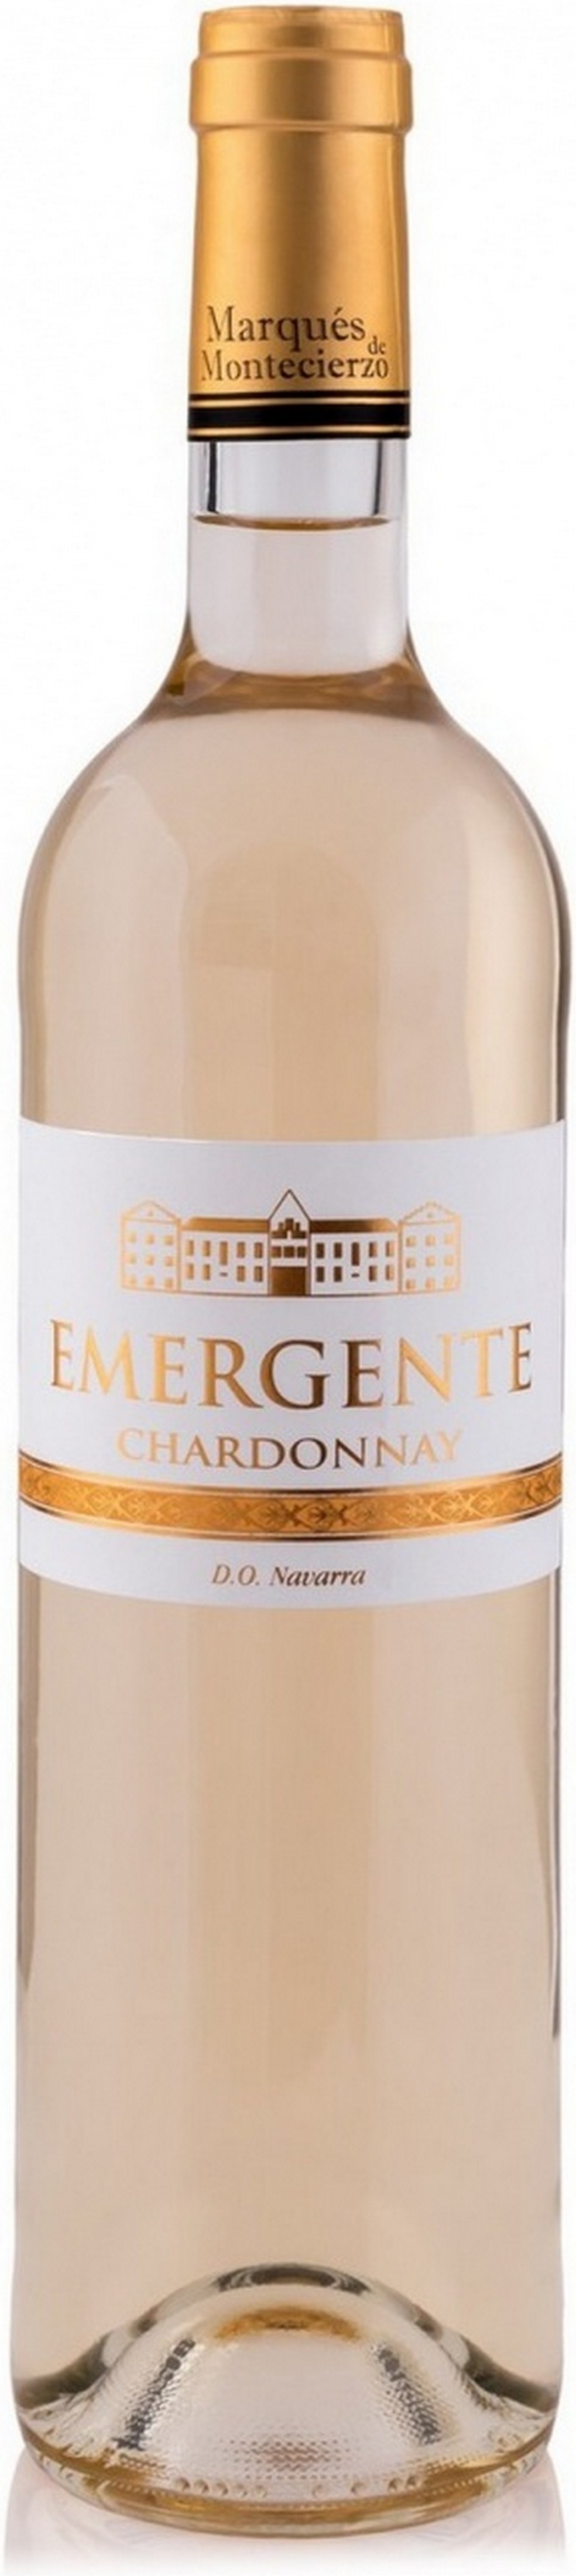 emergente-blanco-chardonnay-2018